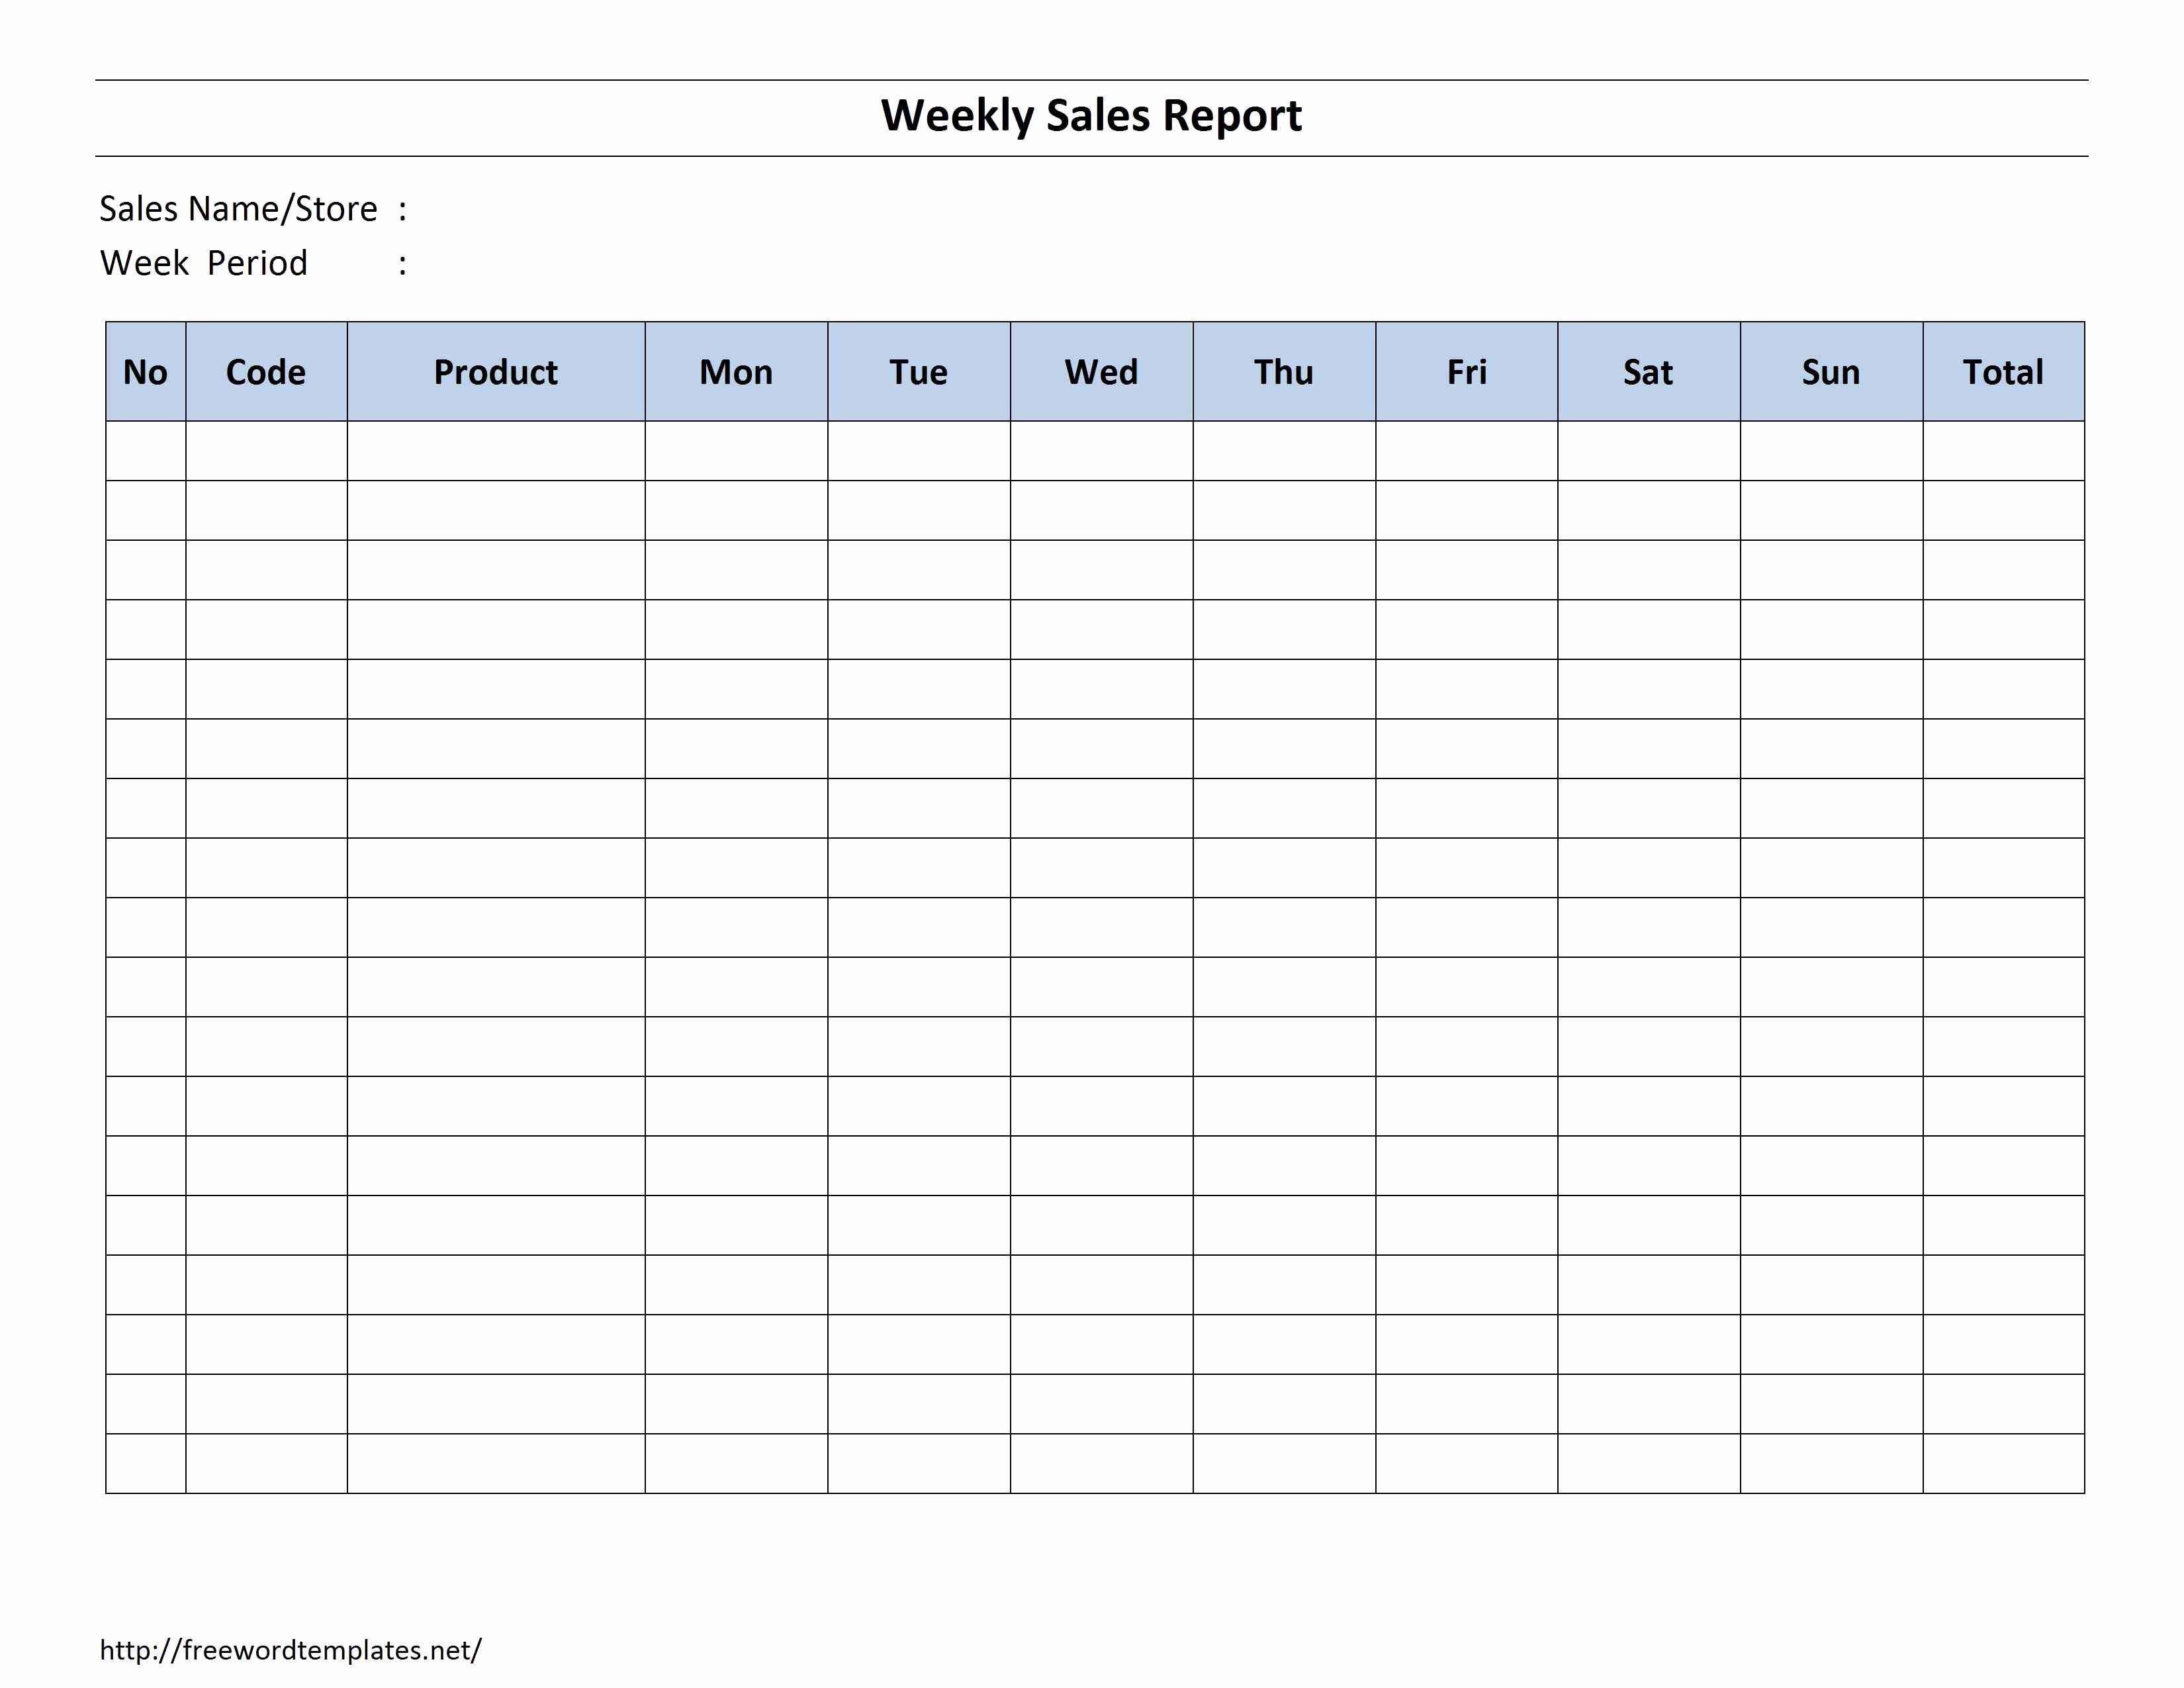 Weekly Sales Report Template Fresh Weekly Sales Report